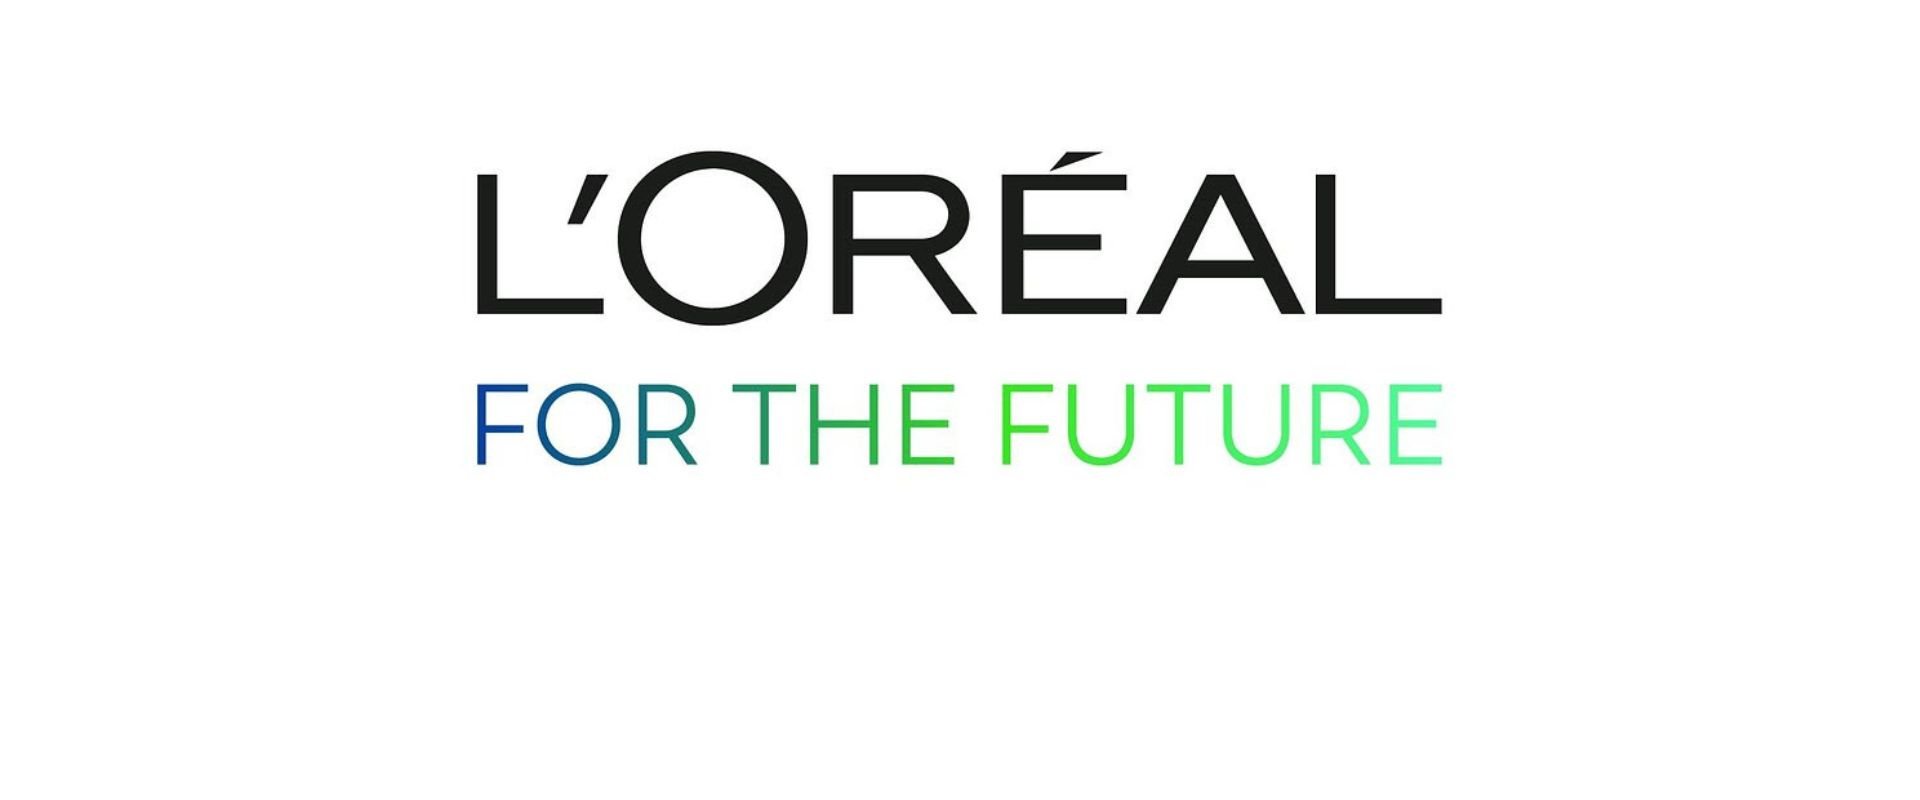 loreal for the future logo hero opt